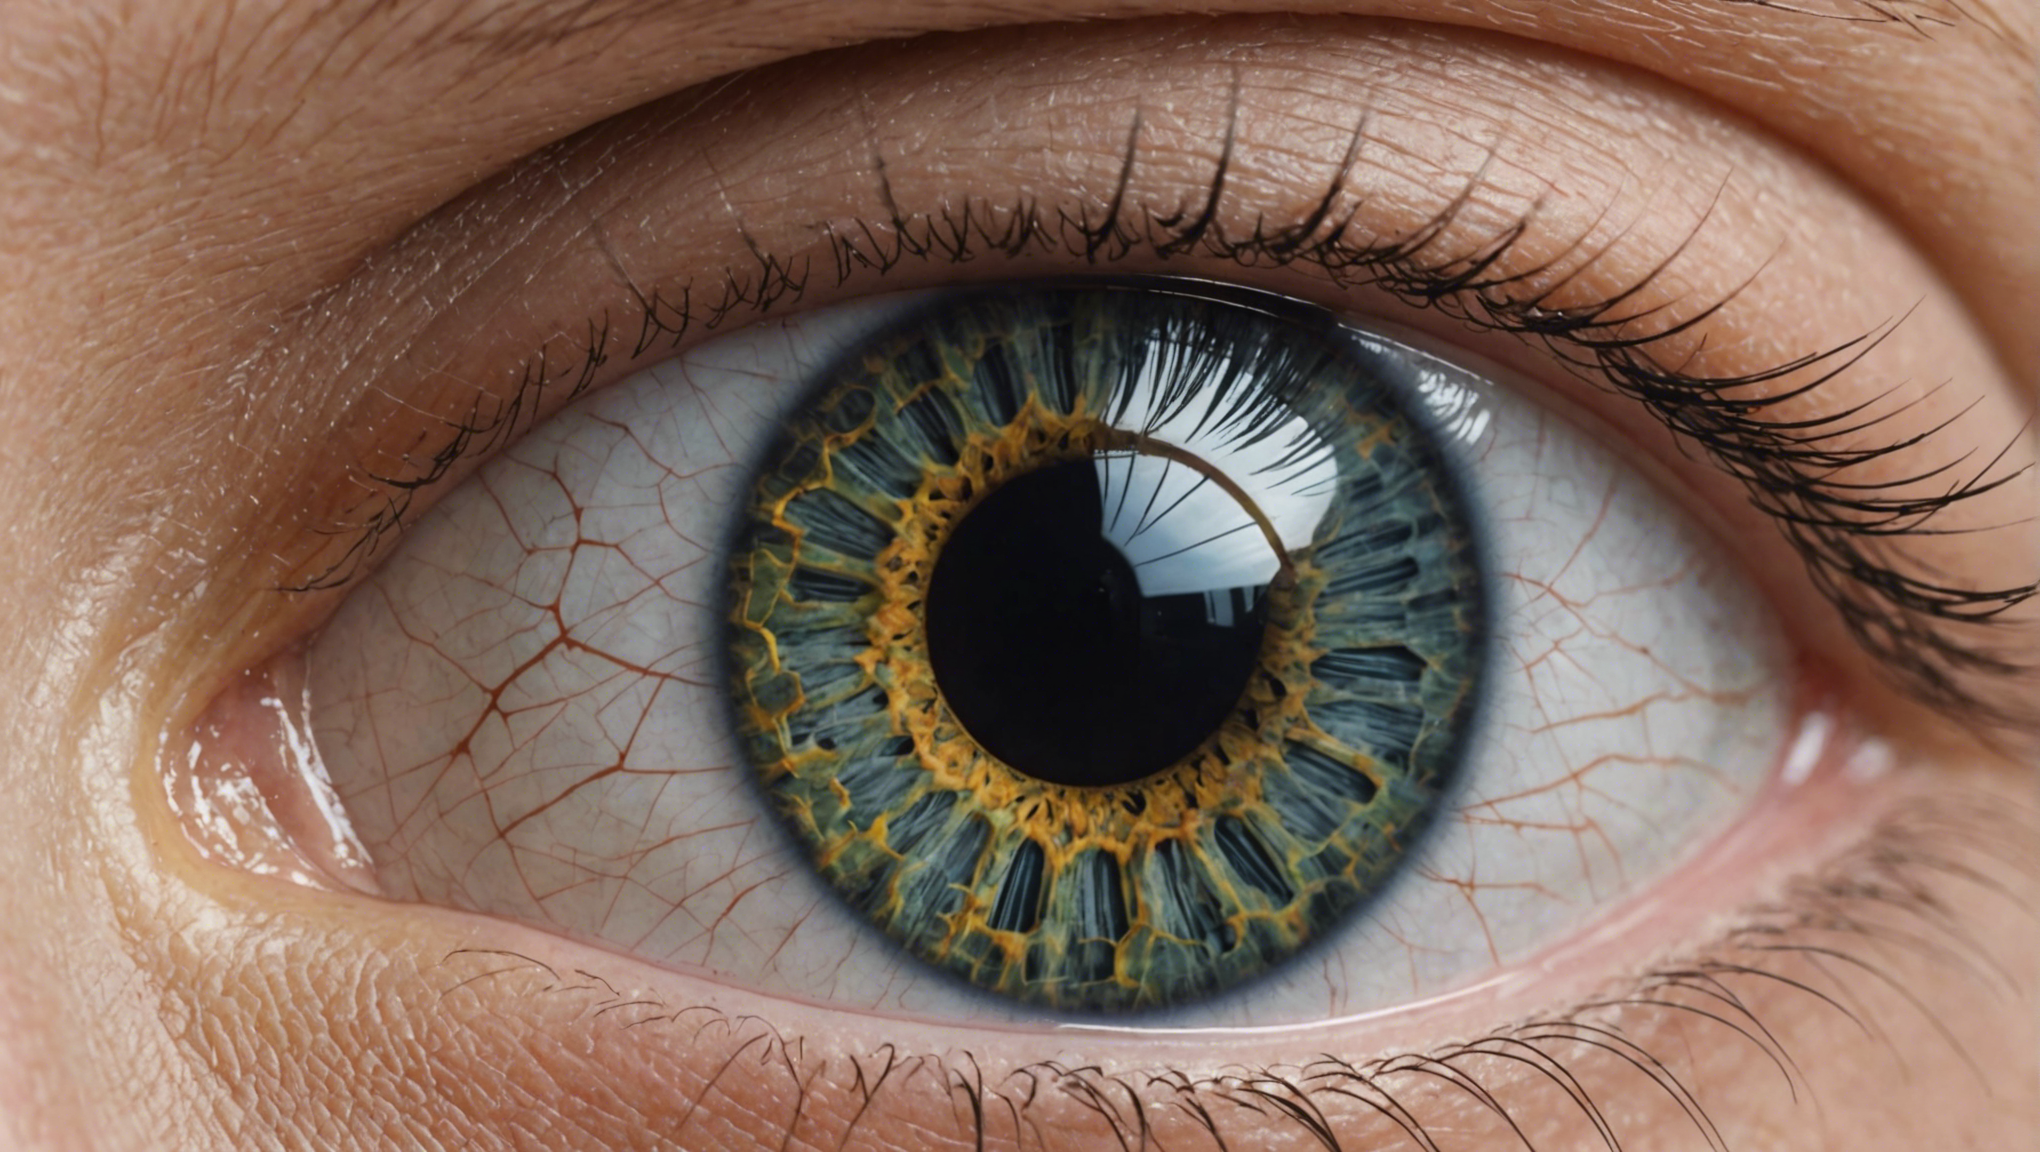 le syndrome de l'œil sec est une affection caractérisée par une diminution de la production de larmes, entraînant une sensation d'inconfort et de sécheresse oculaire.